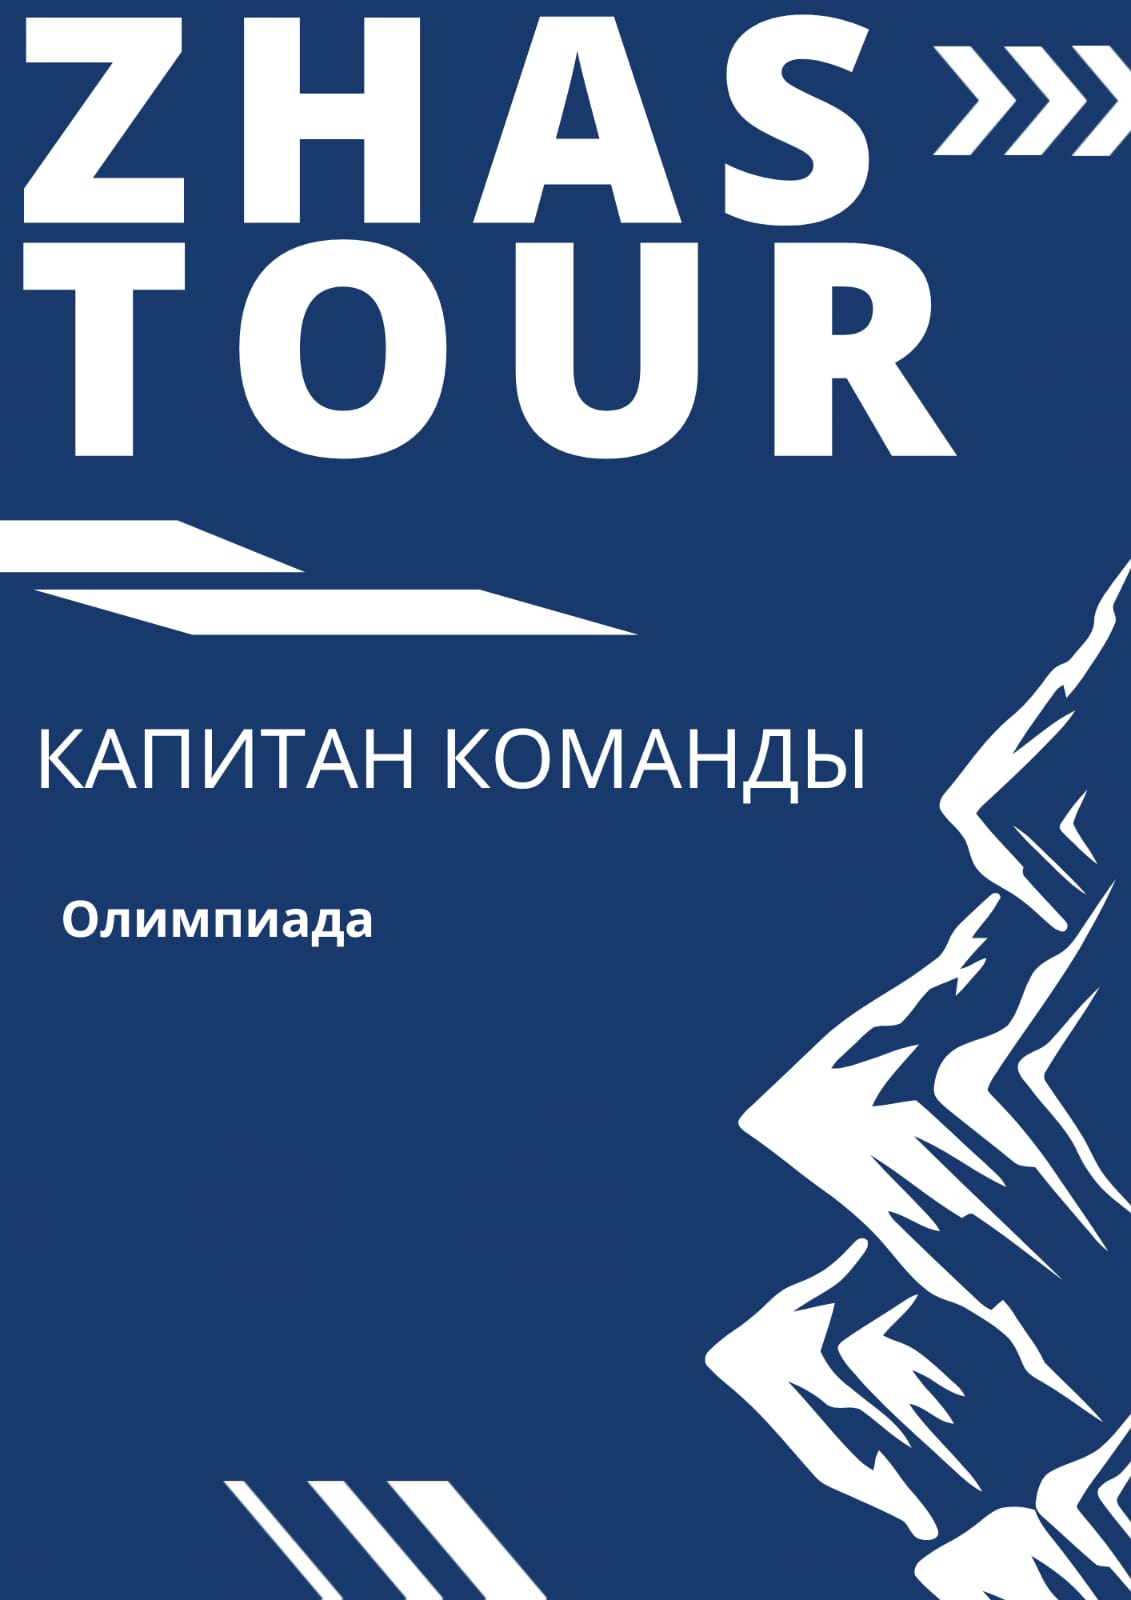 Встреча руководителей туристских организаций и компаний Казахстана и Кыргызстана (в рамках выставки KITF 2024) на базе КазНУ им. аль-Фараби